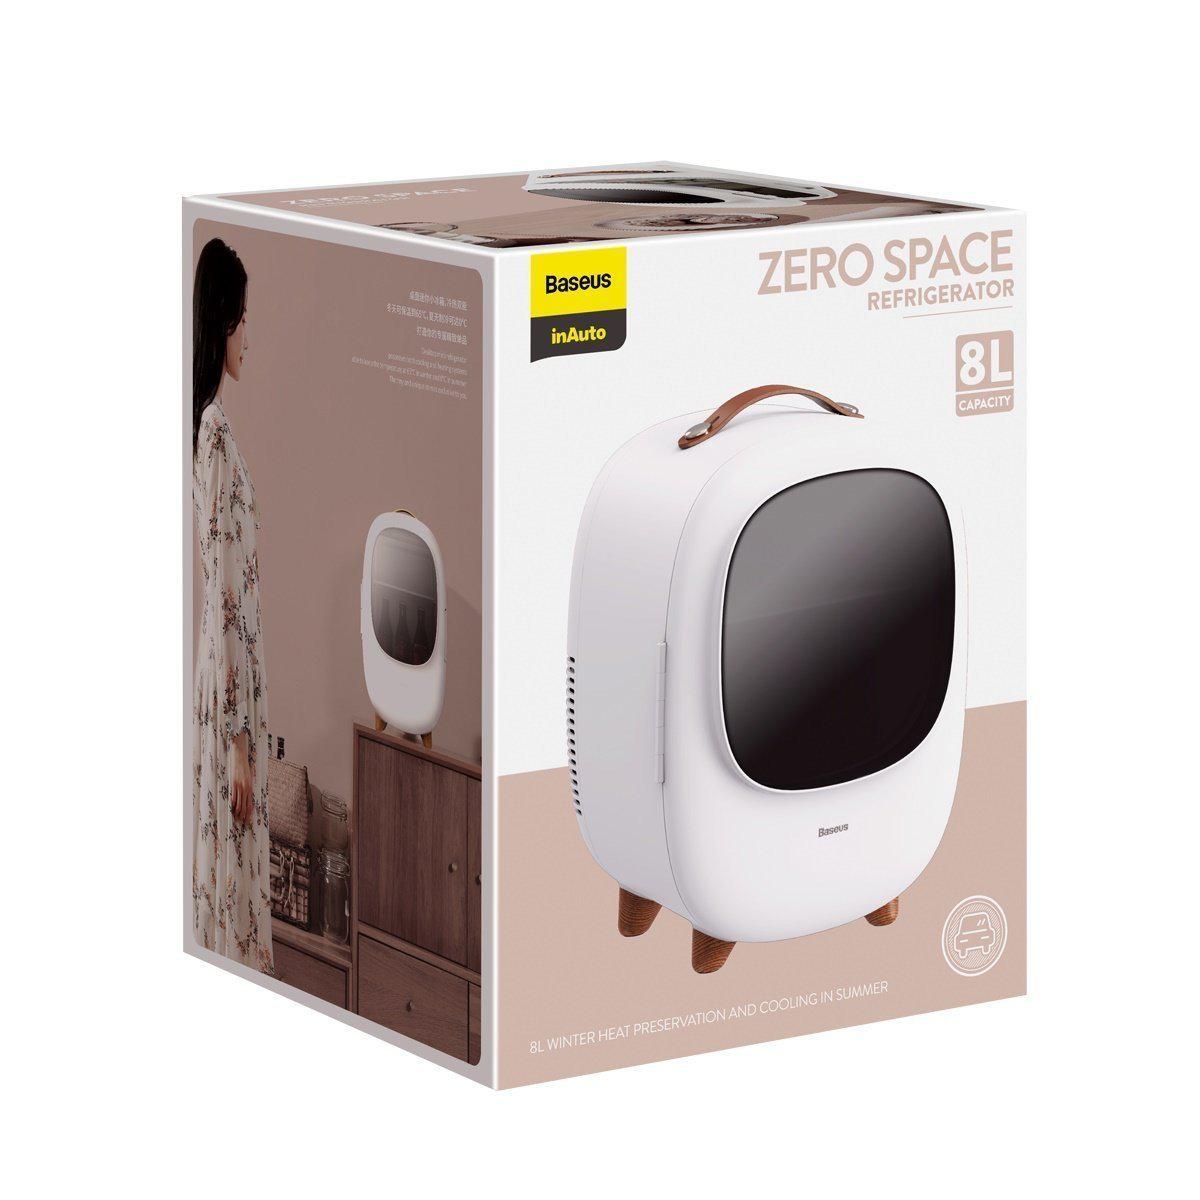 Baseus Zero Space Refrigerator( 8L ) 220v